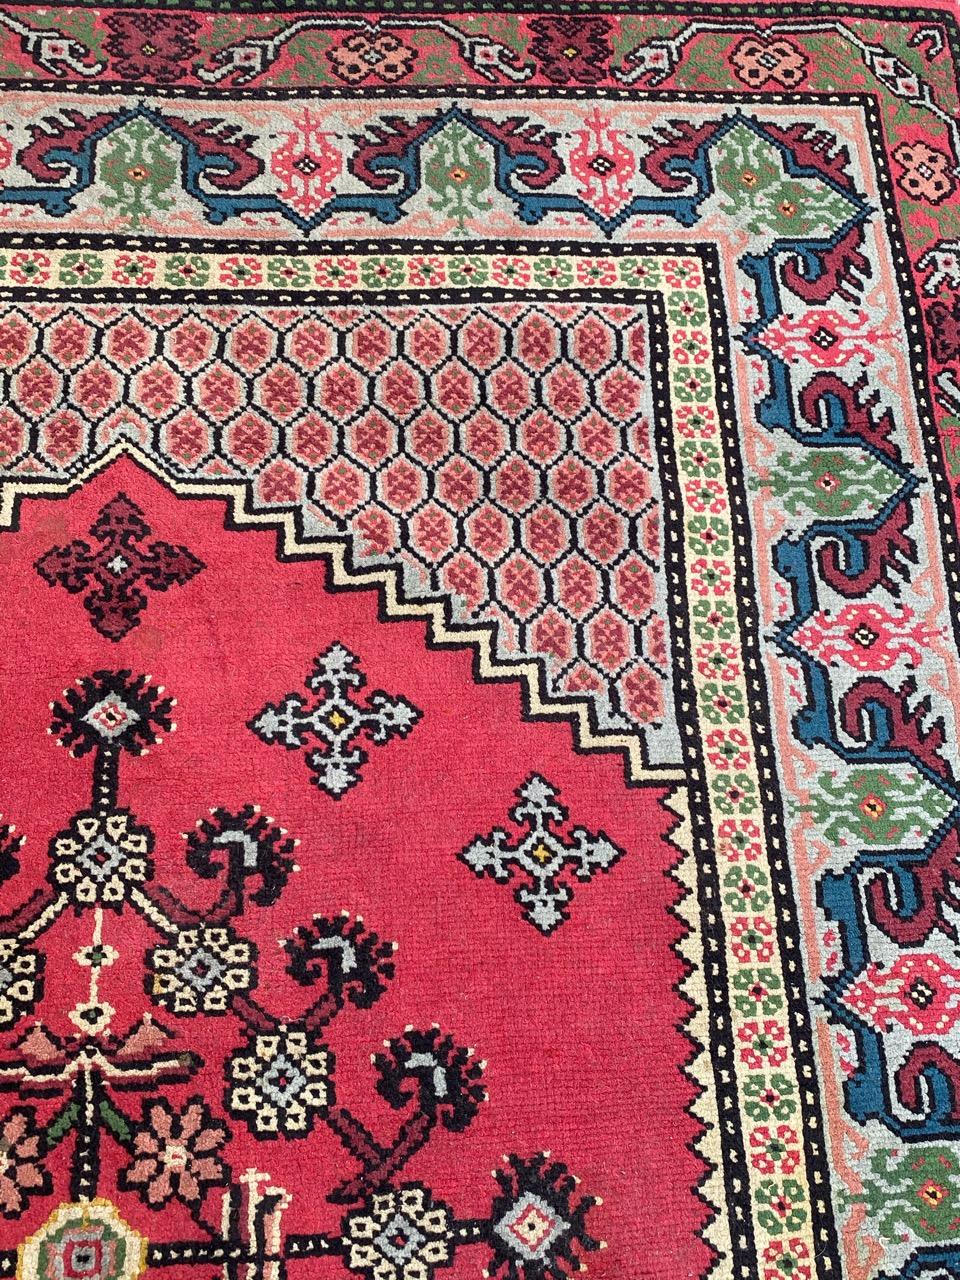 kairouan carpets